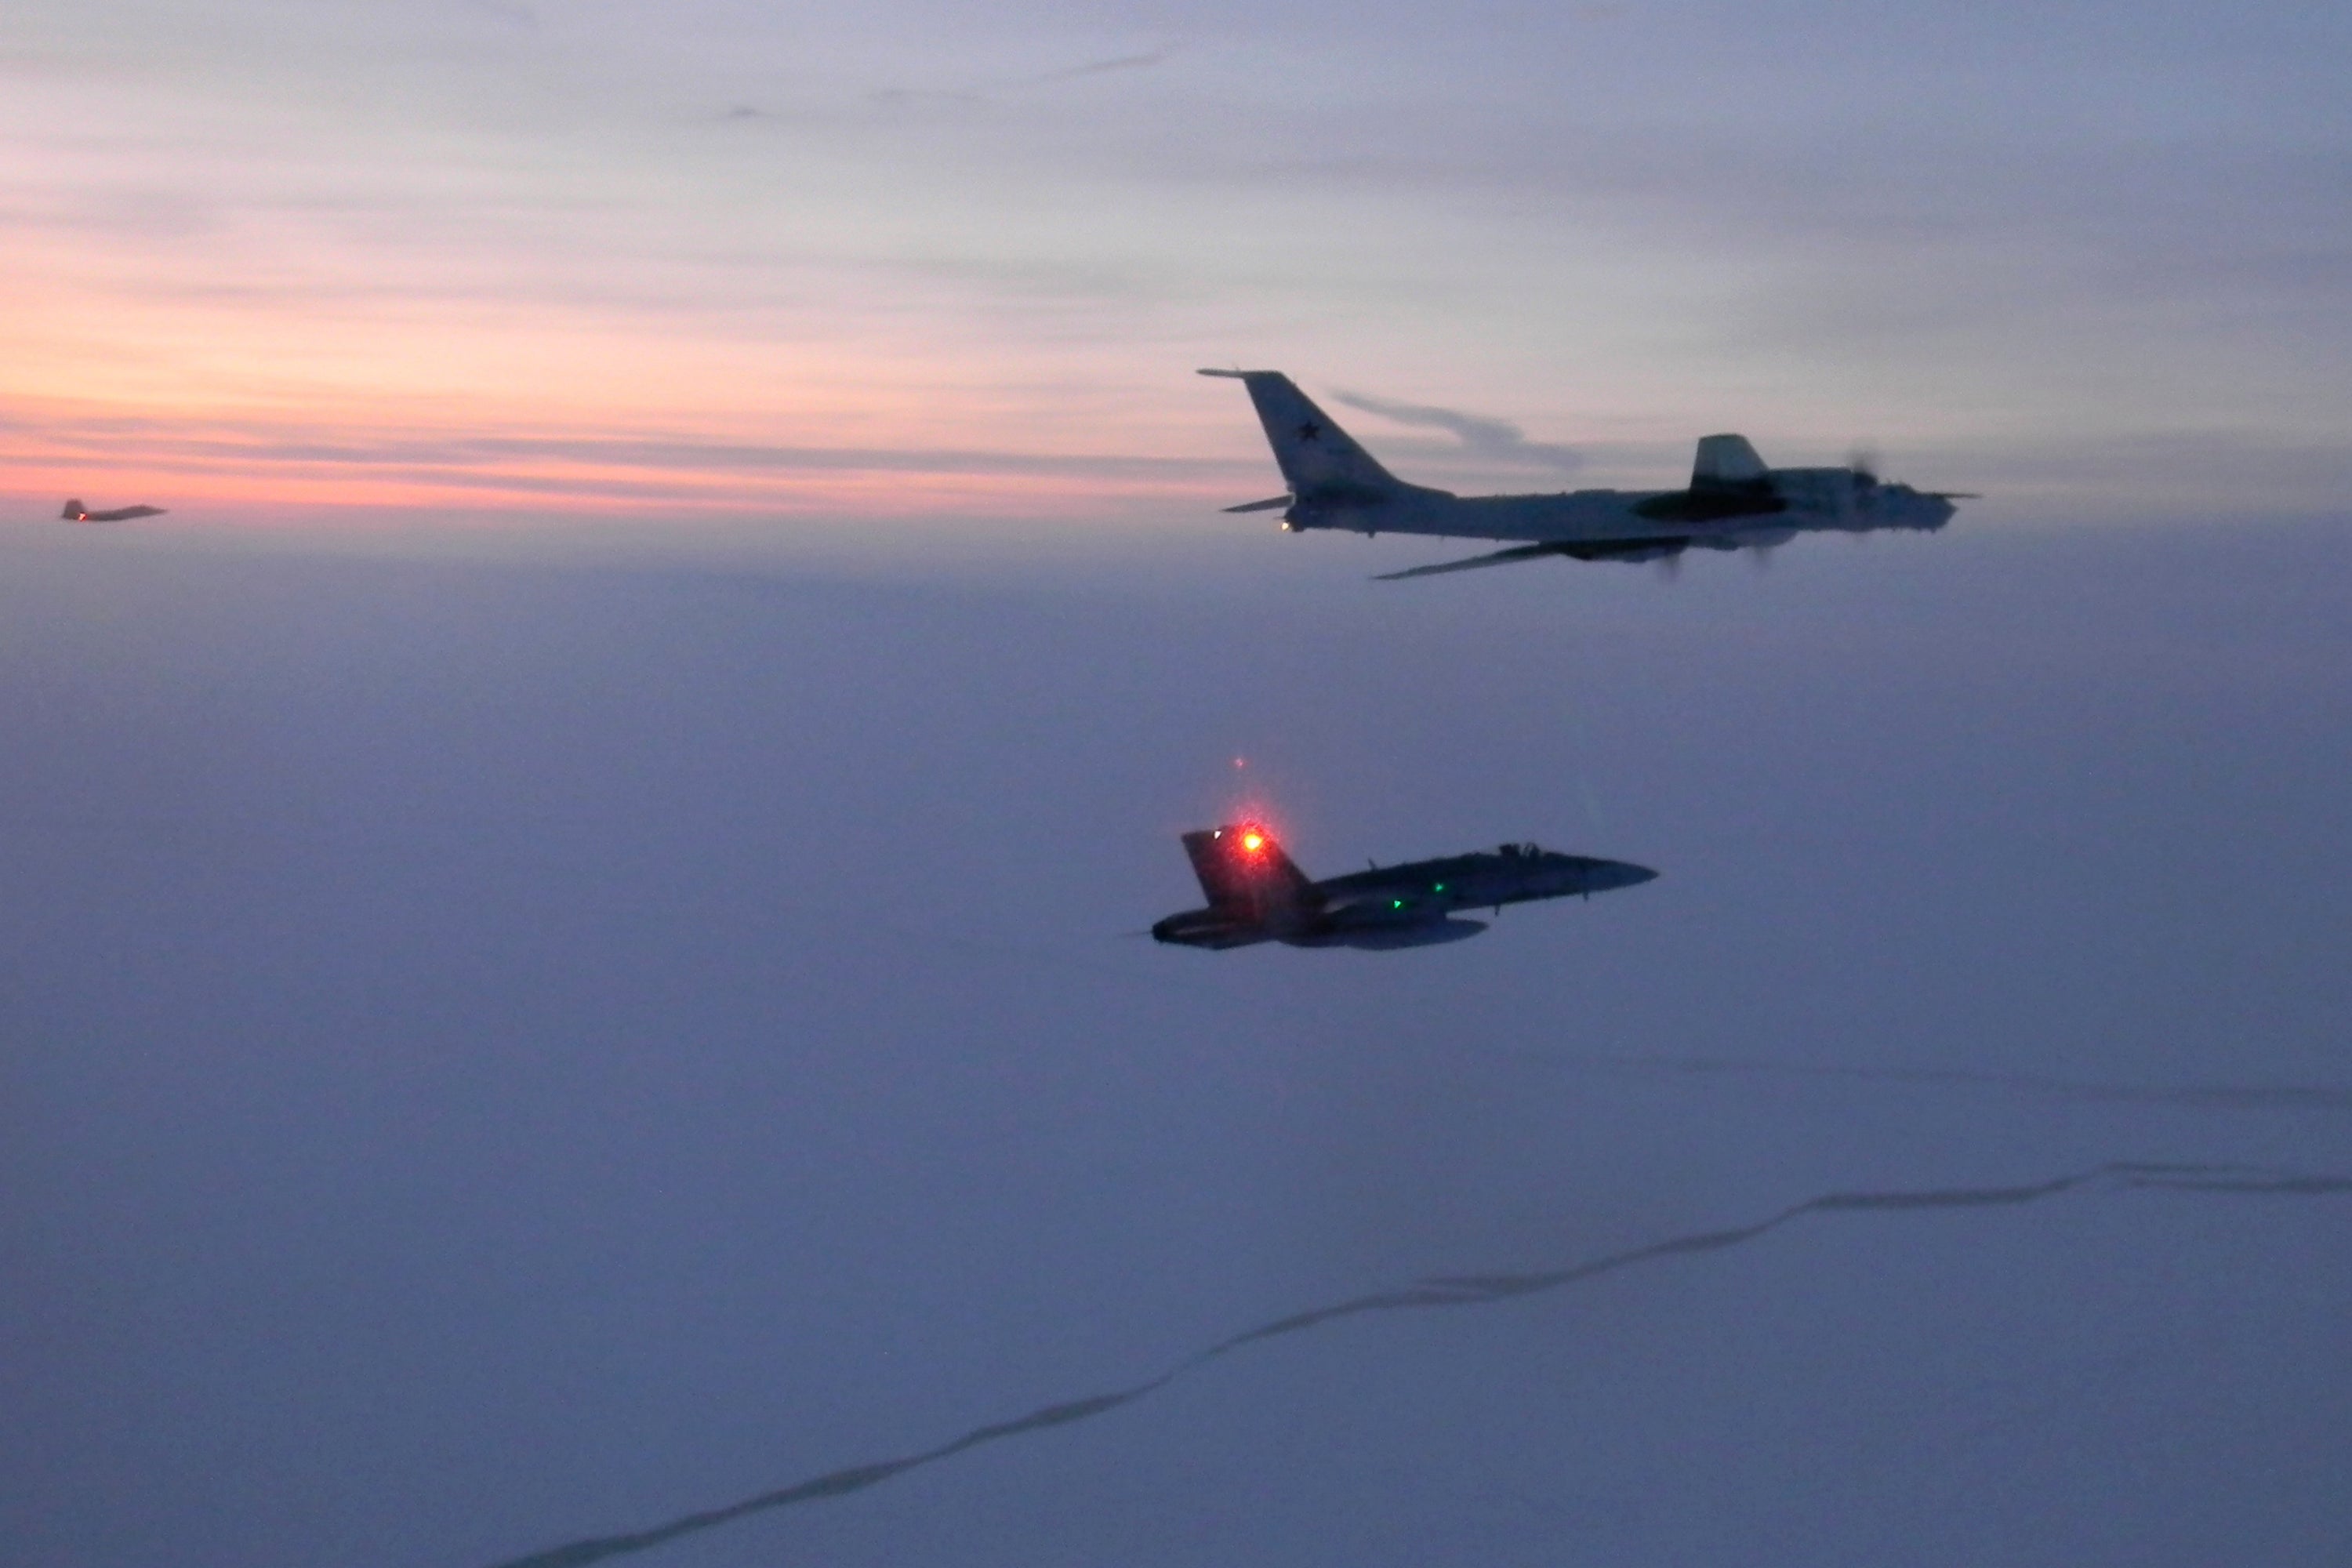 Un avión ruso de reconocimiento marítimo Tu-142, arriba, siendo interceptado cerca de la costa de Alaska